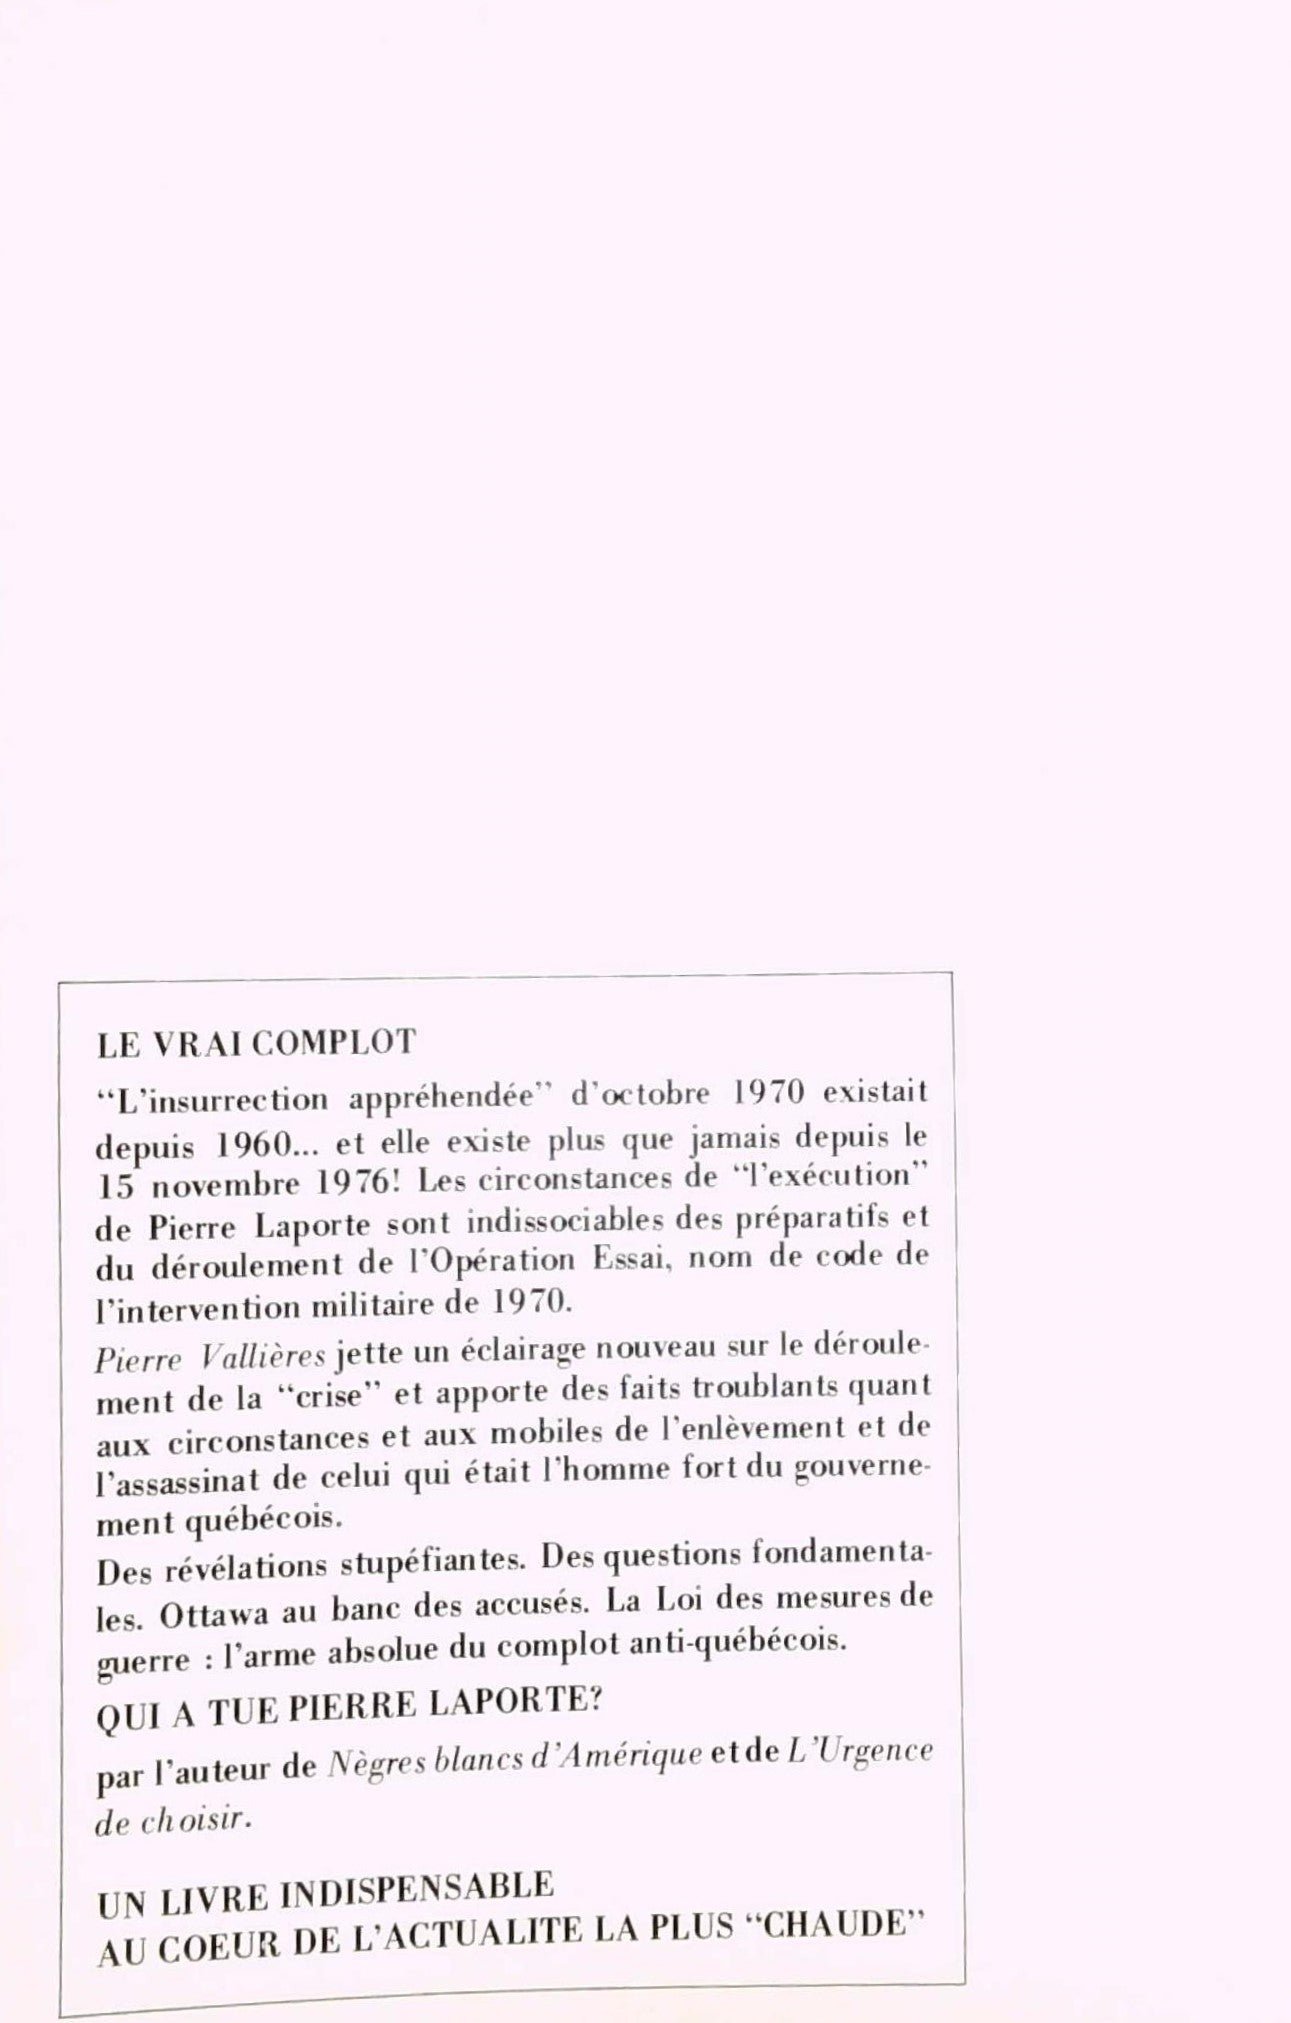 L'exécution de Pierre Laporte : Les dessous de l'opération (Pierre Vallières)